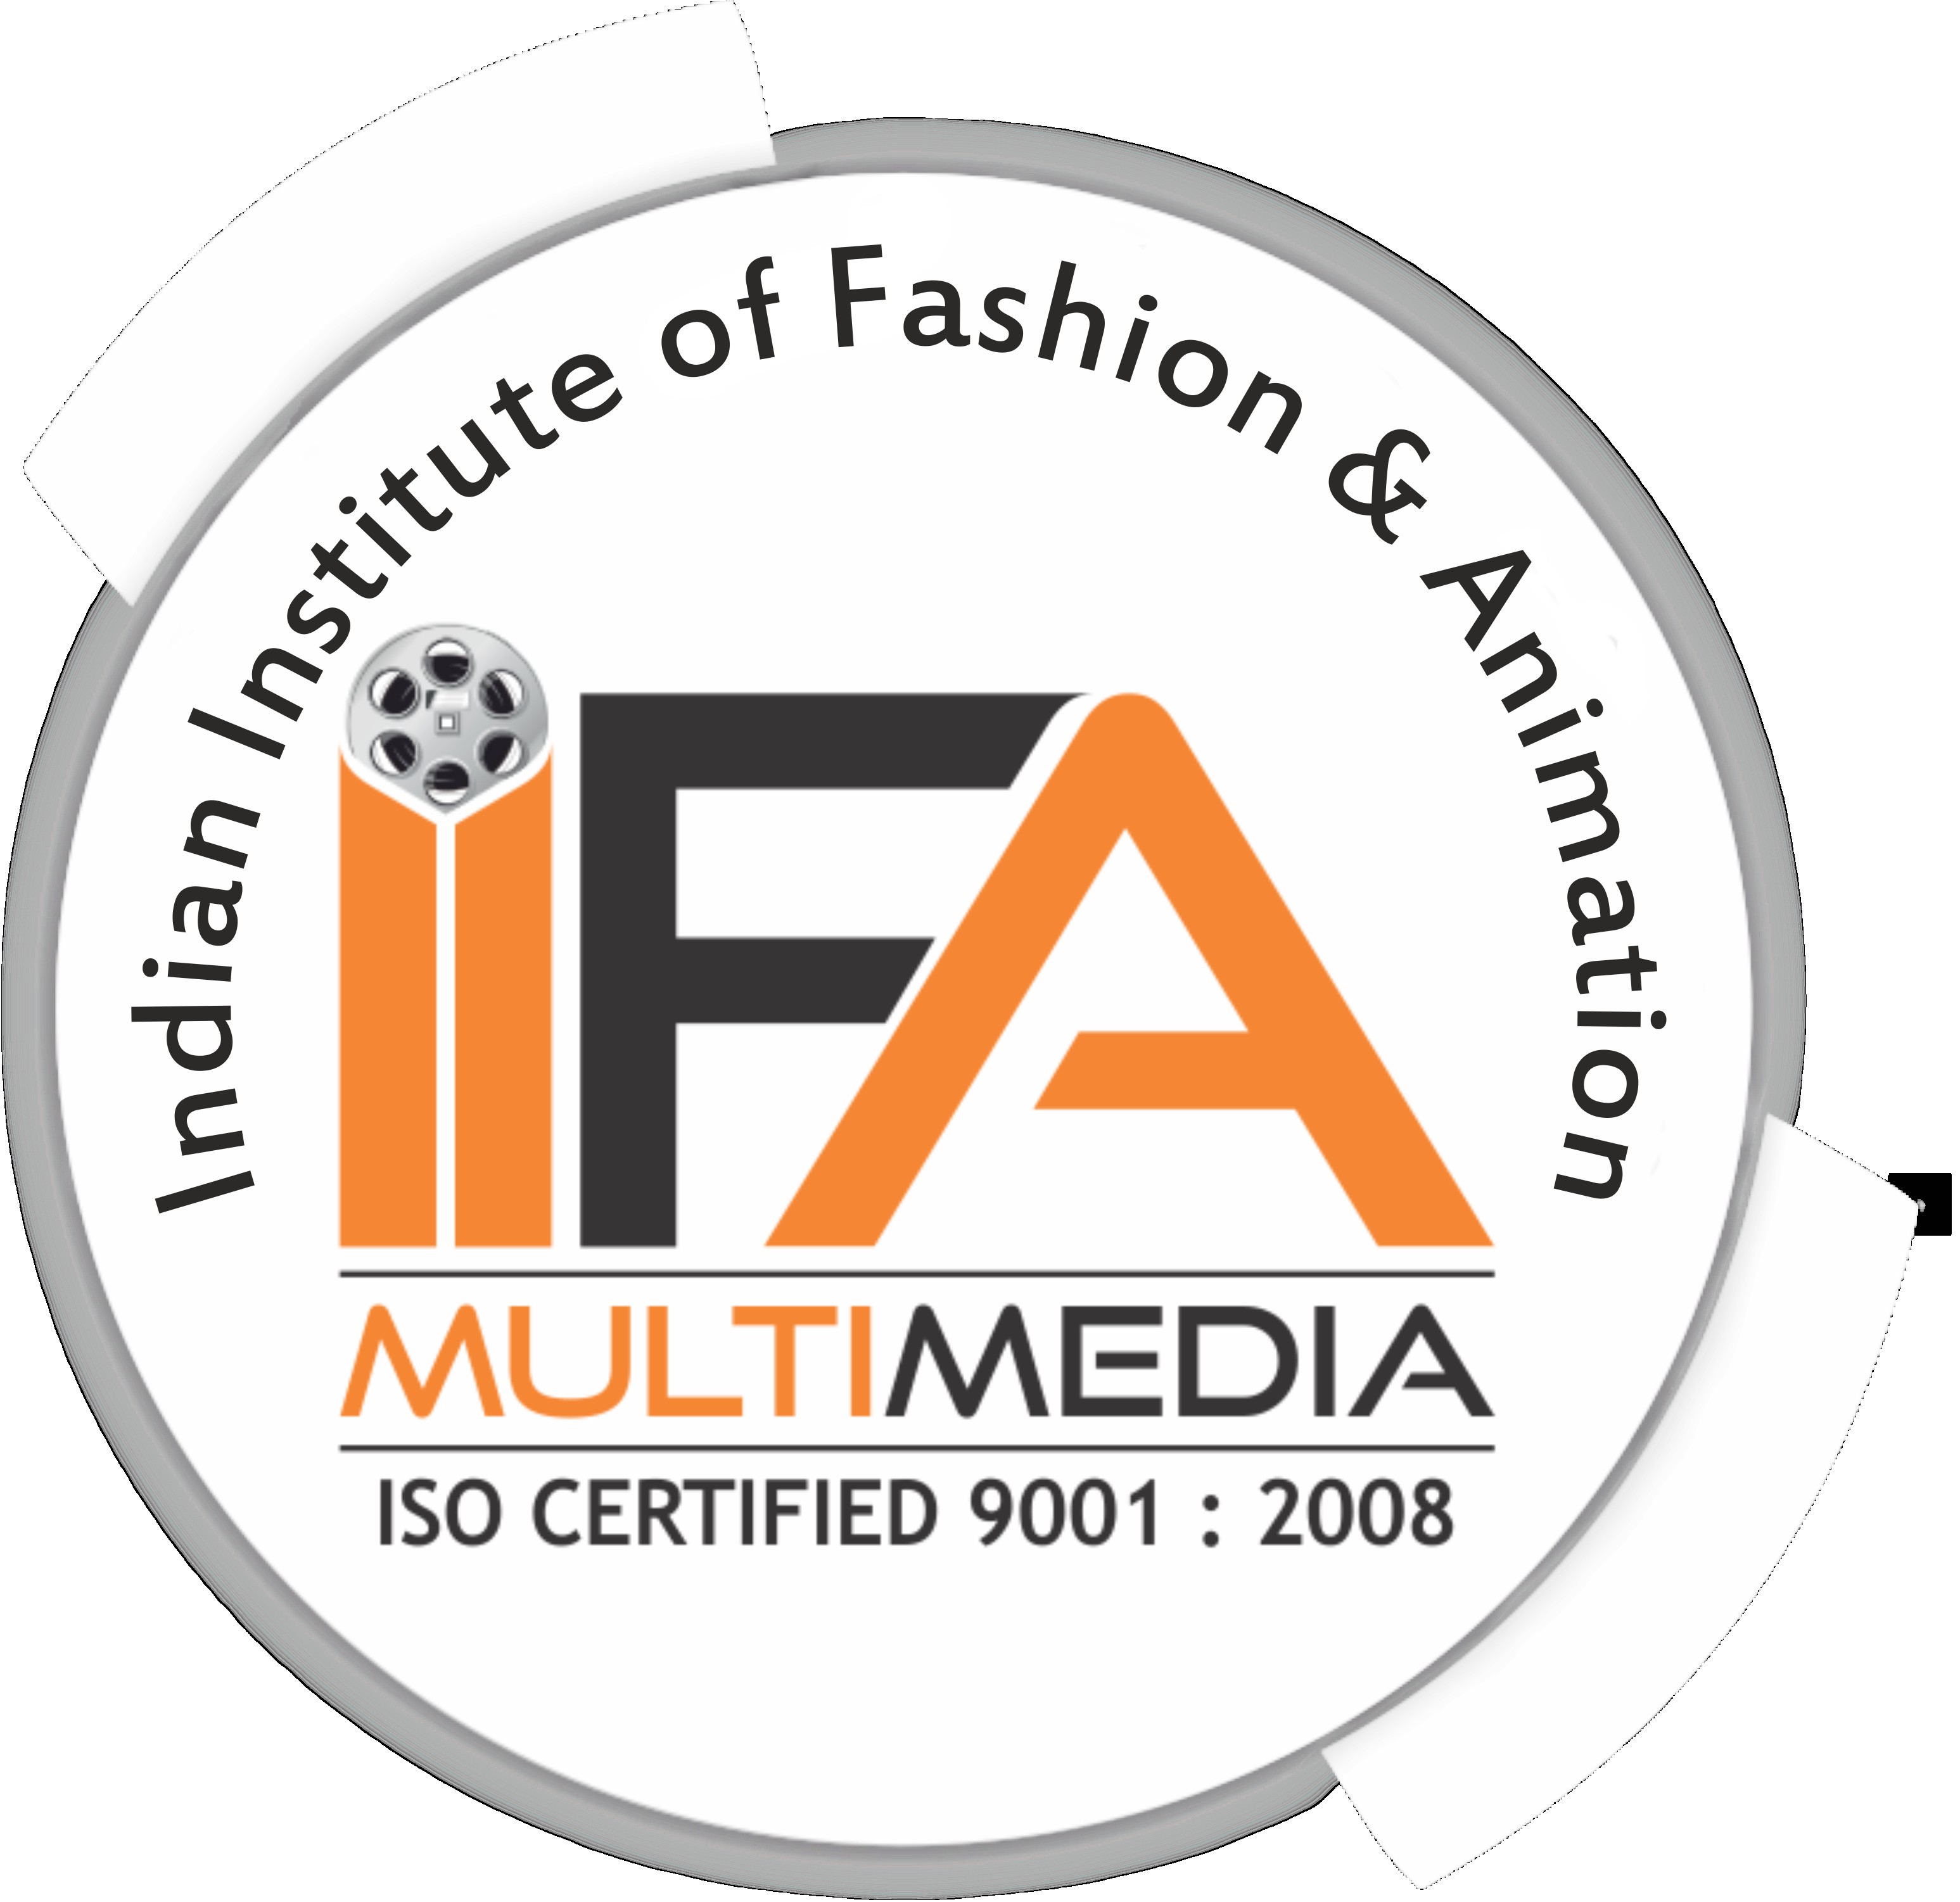 Multimedia & Animation Courses in Udupi, Classes, Training Institutes |  Sulekha Udupi